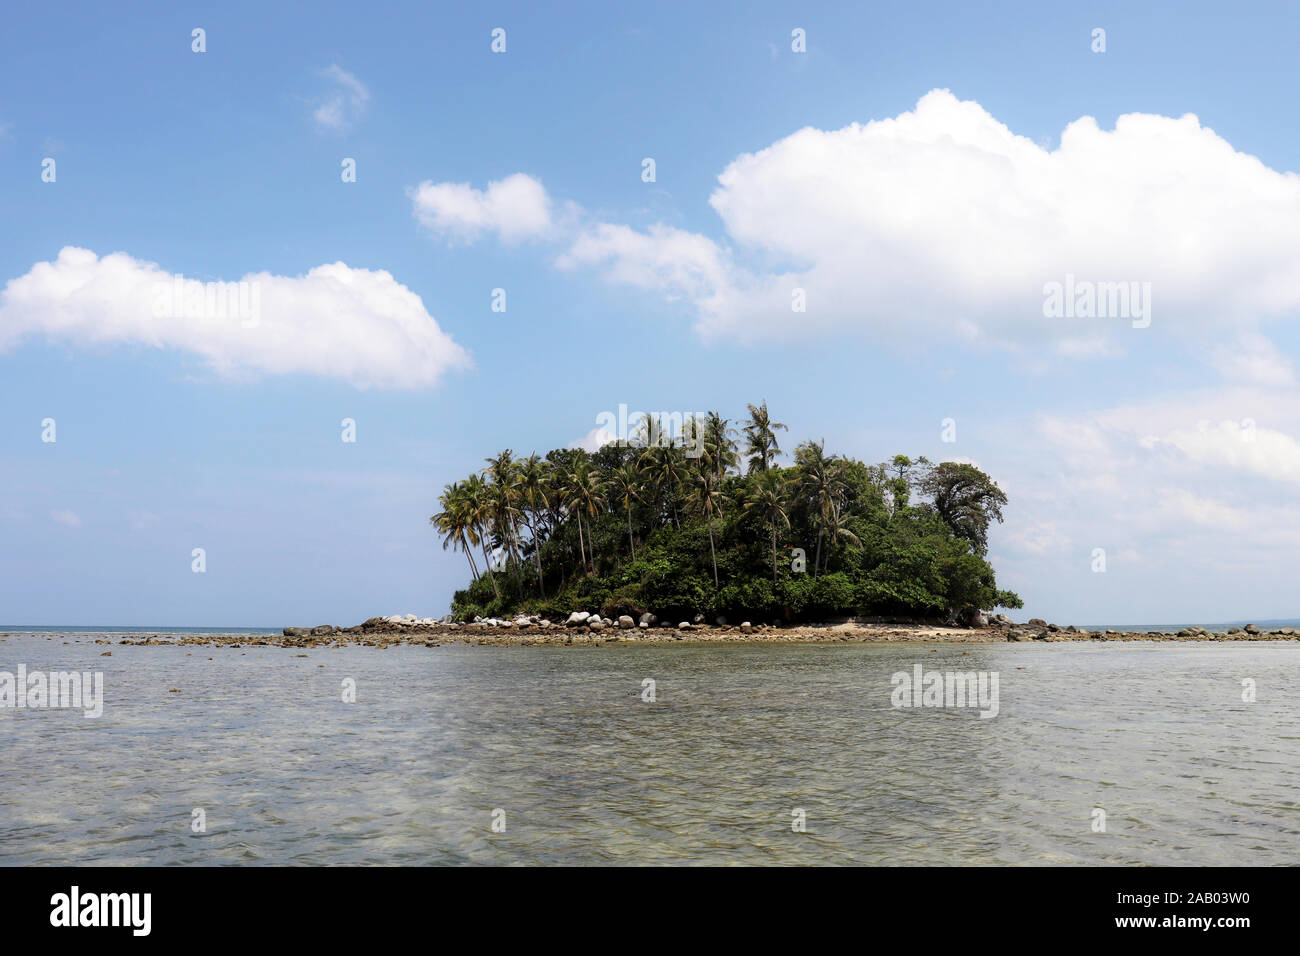 L'île tropical avec des cocotiers dans une vue pittoresque de l'océan, l'eau calme. Seascape colorés, concept de vacances et nature paradise Banque D'Images